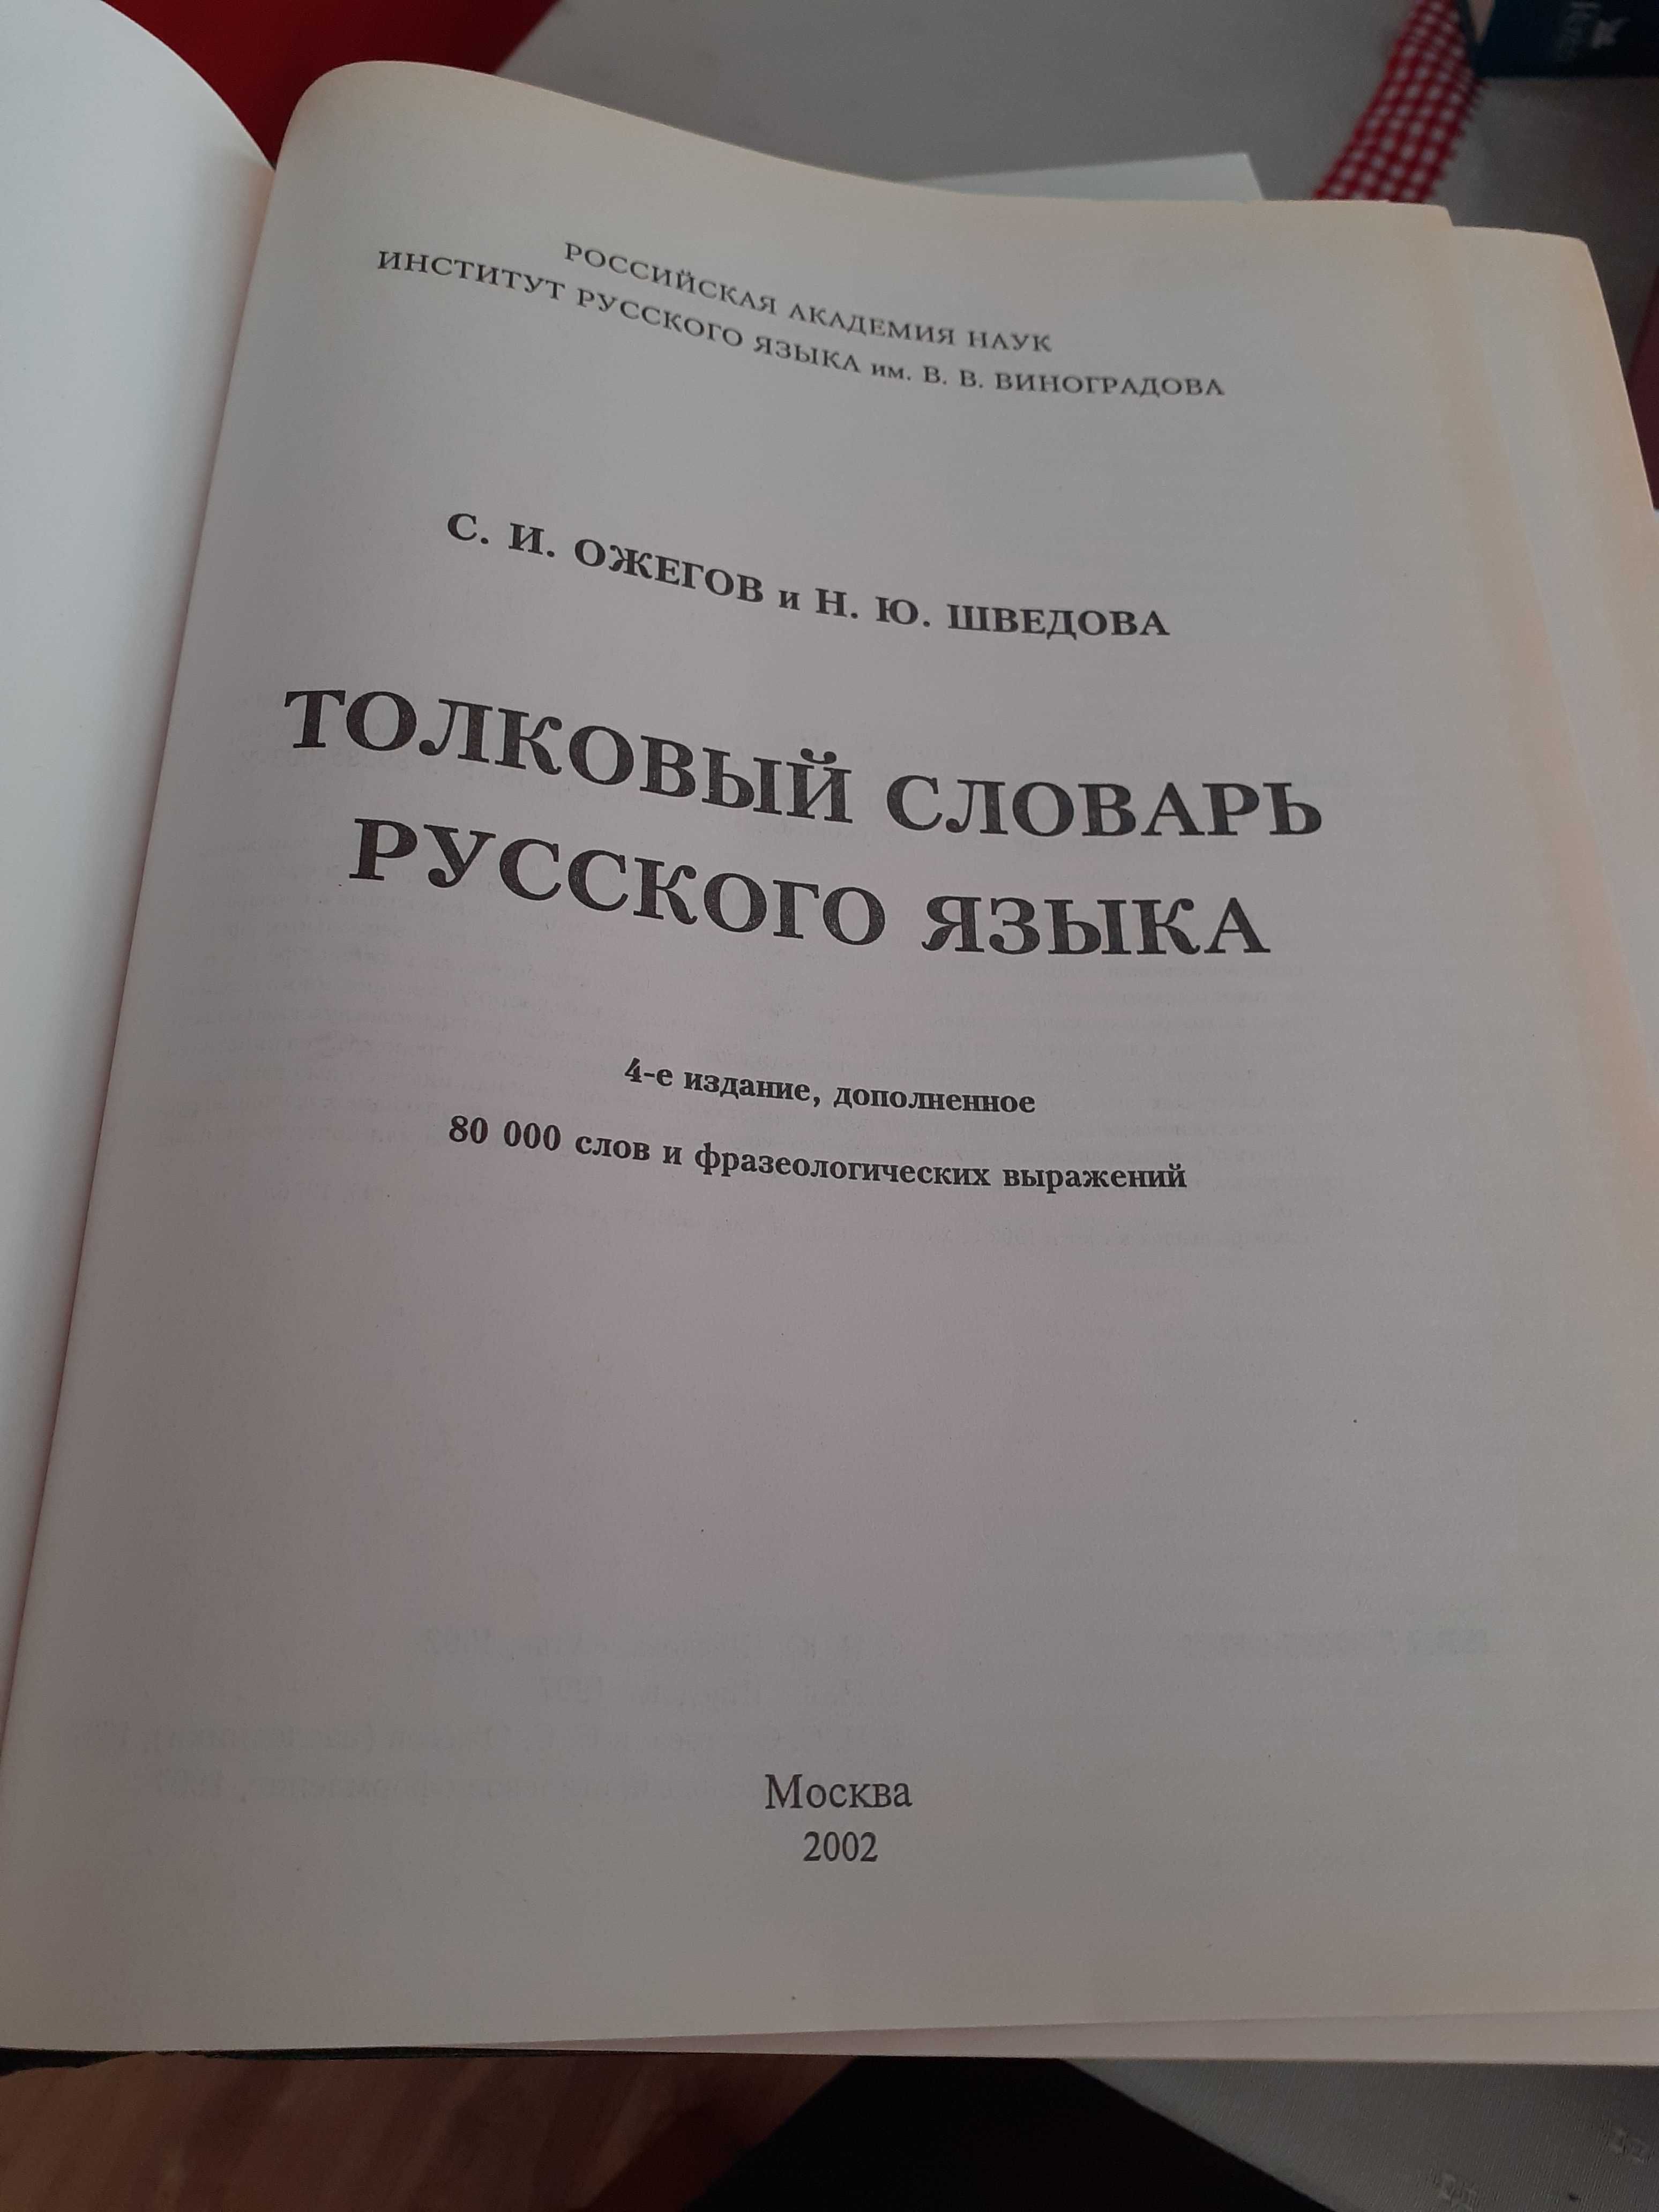 Słownik rosyjsko-rosyjski